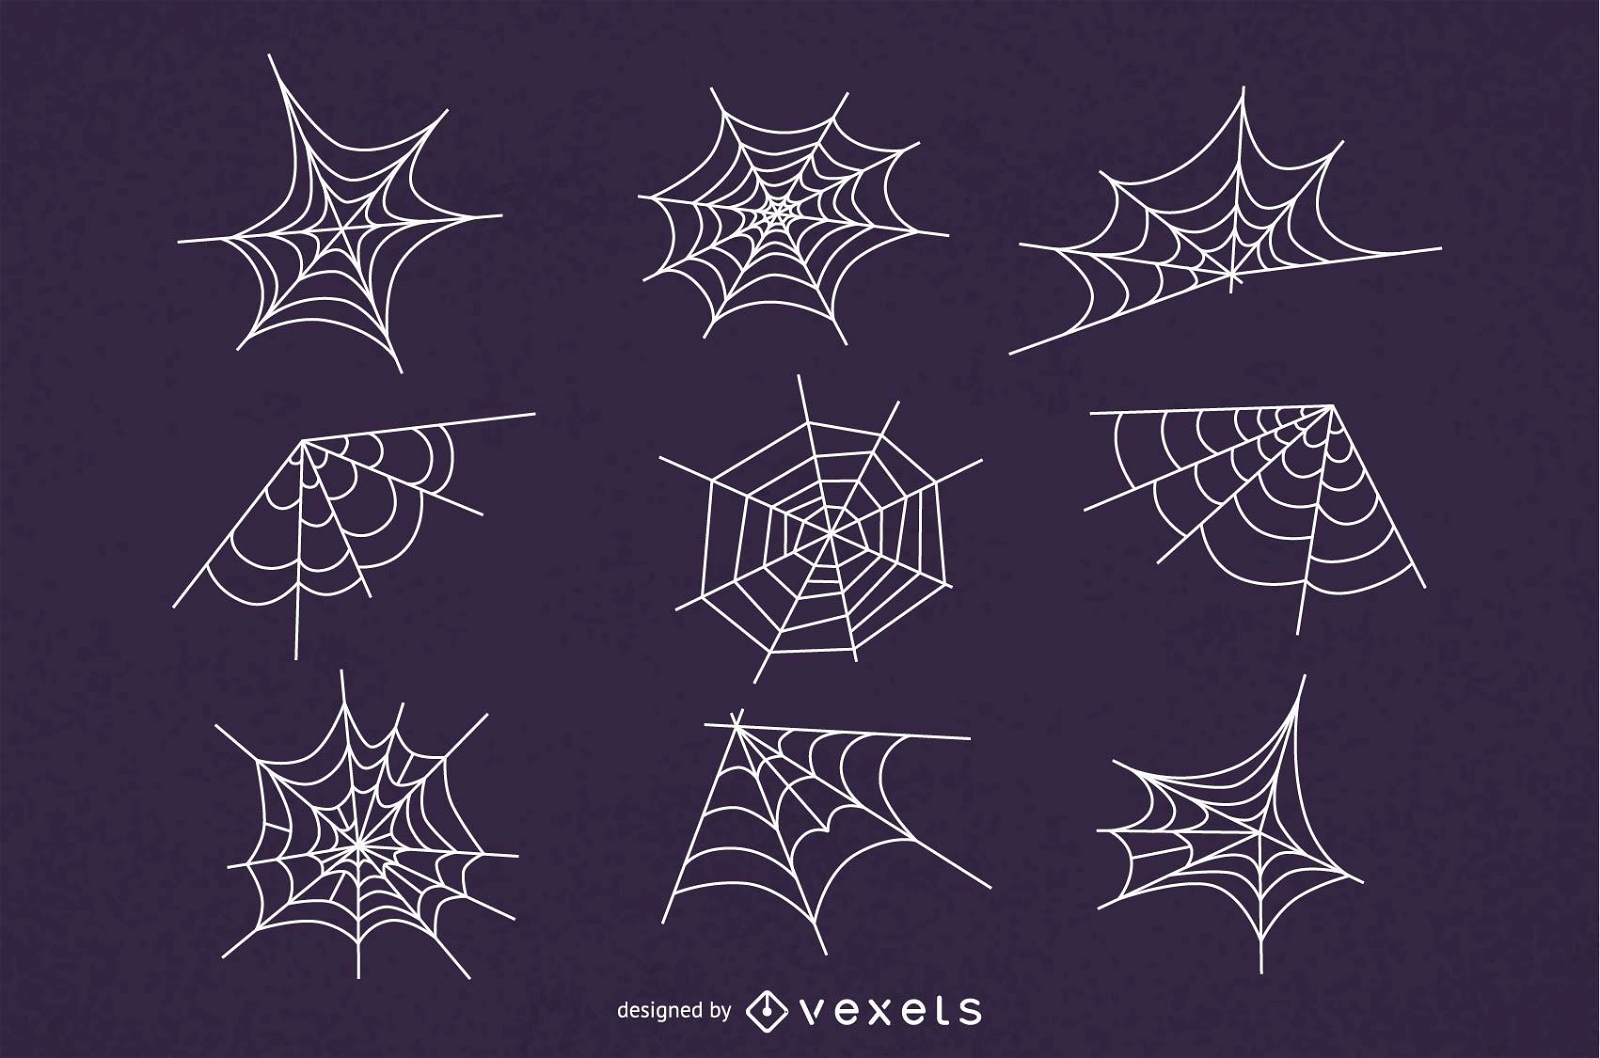 Spider web illustration set